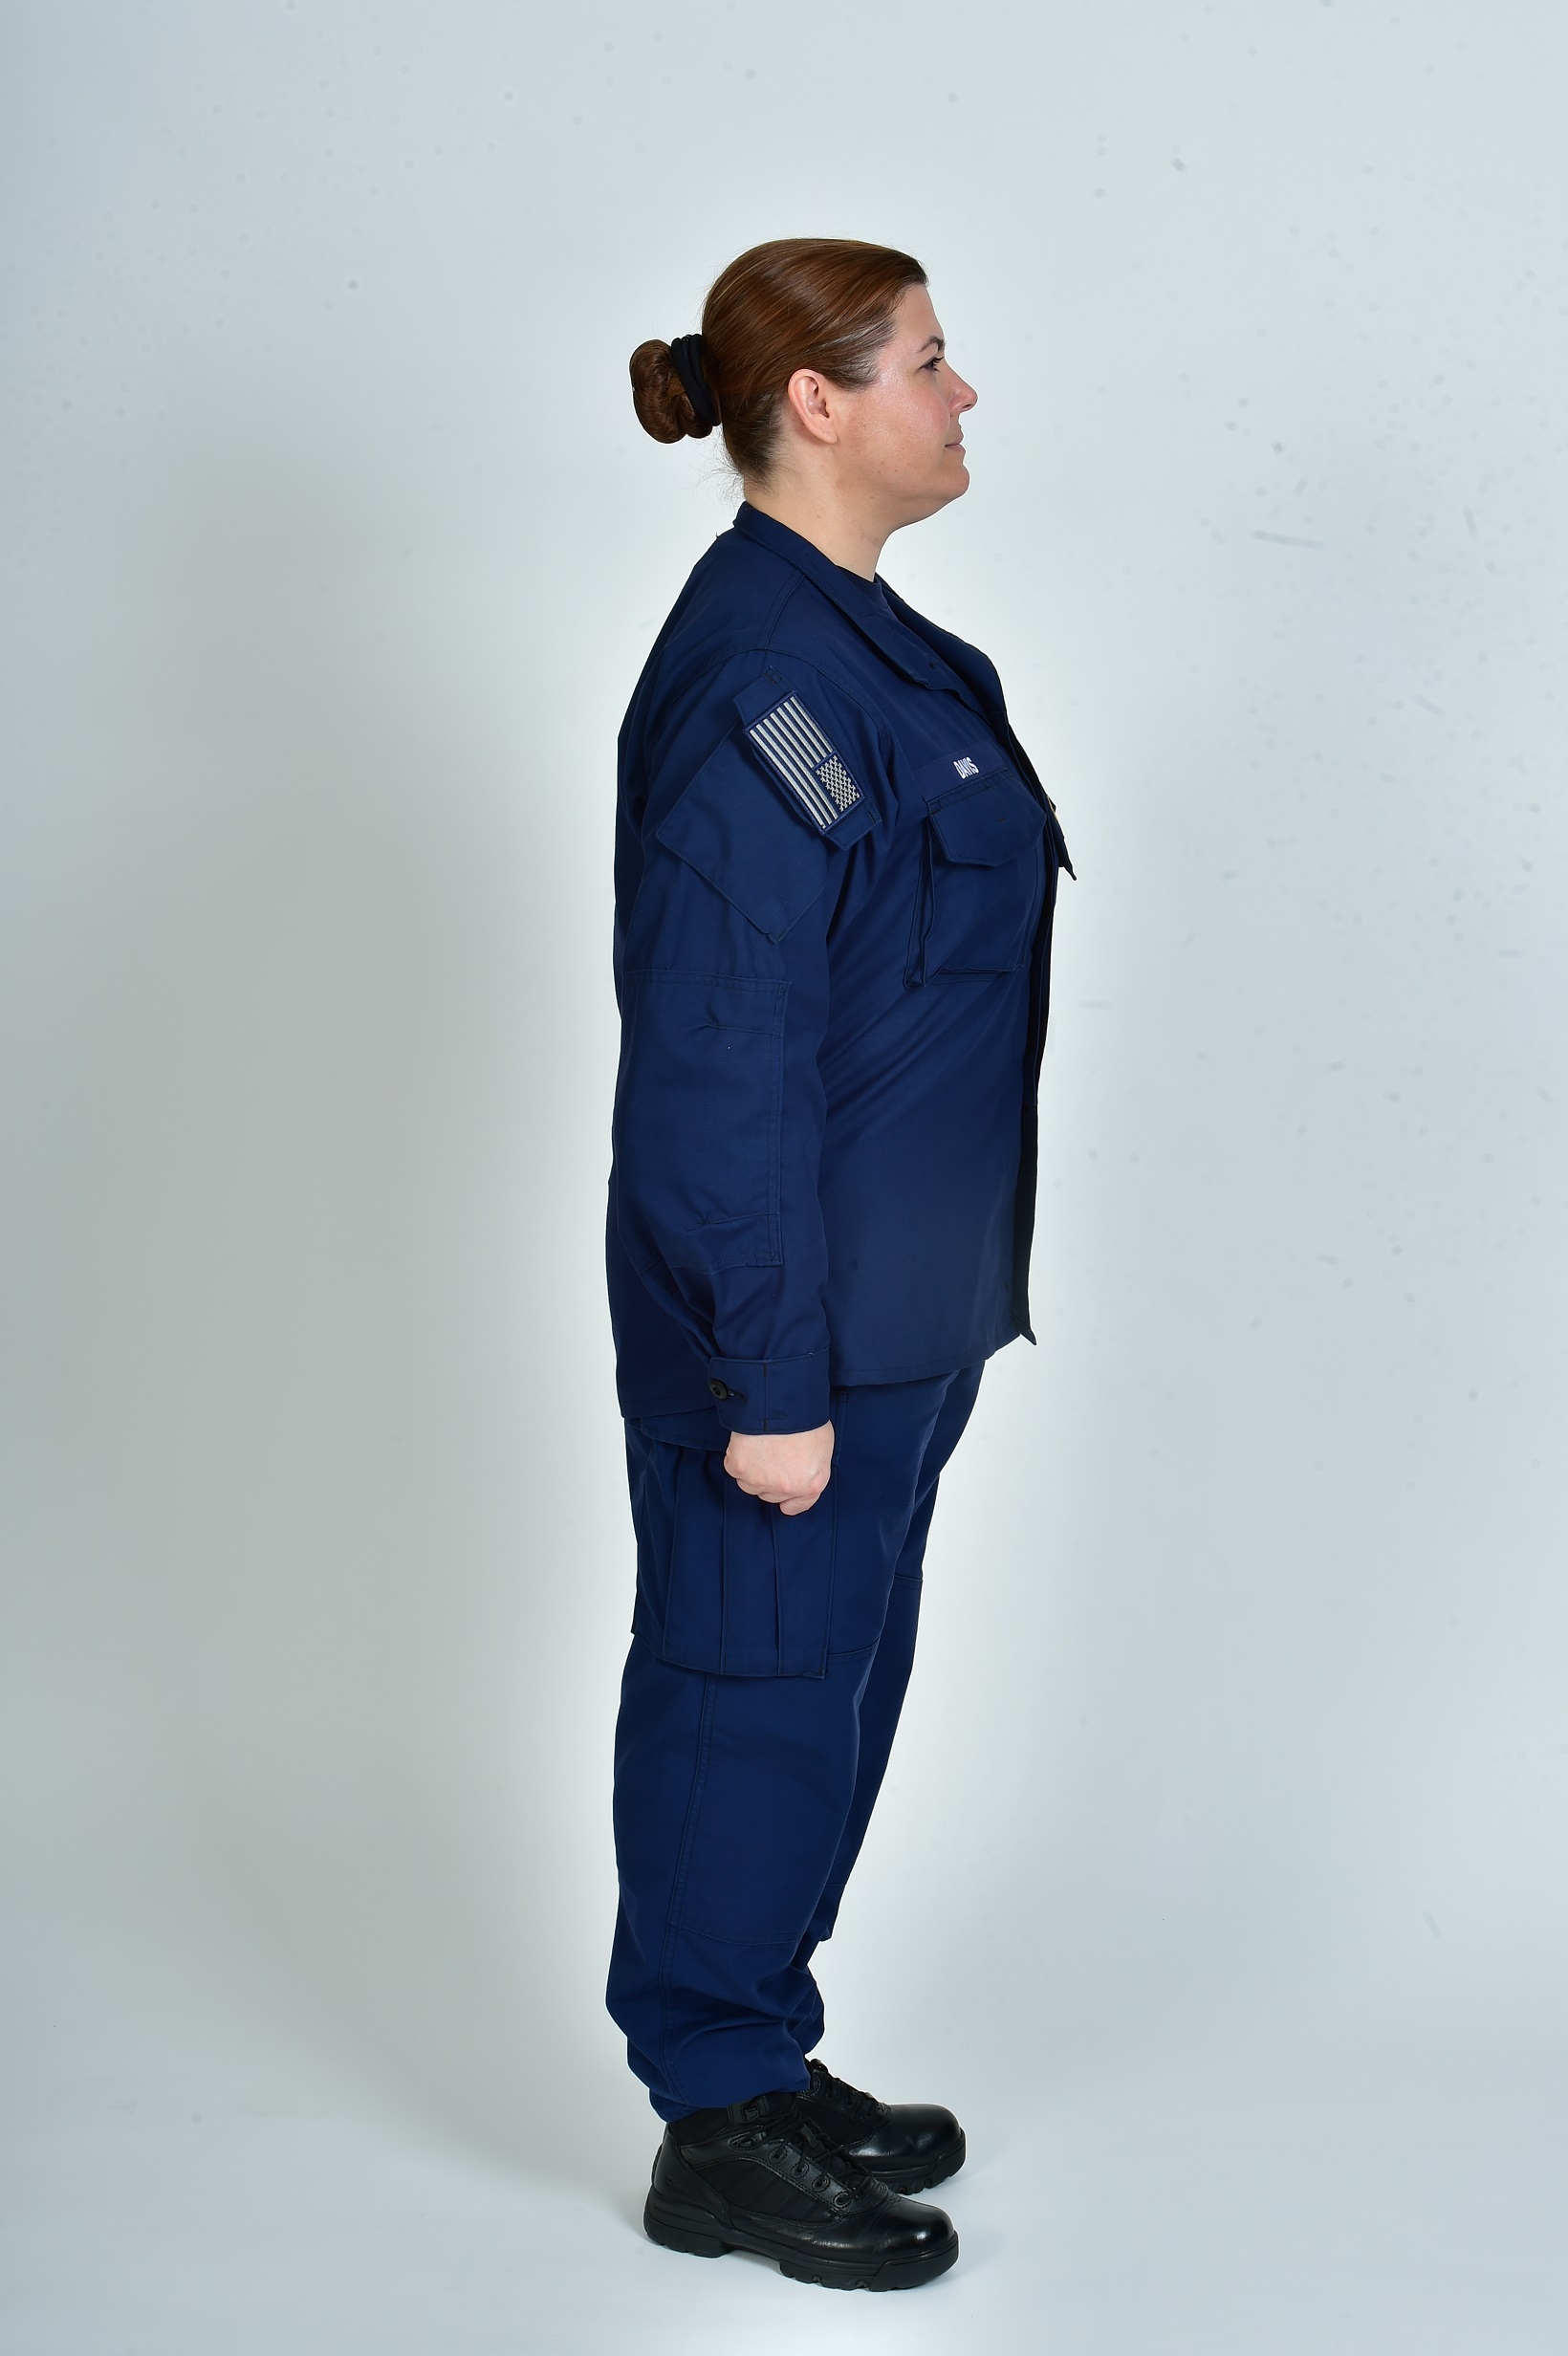 Coast Guard Uniform